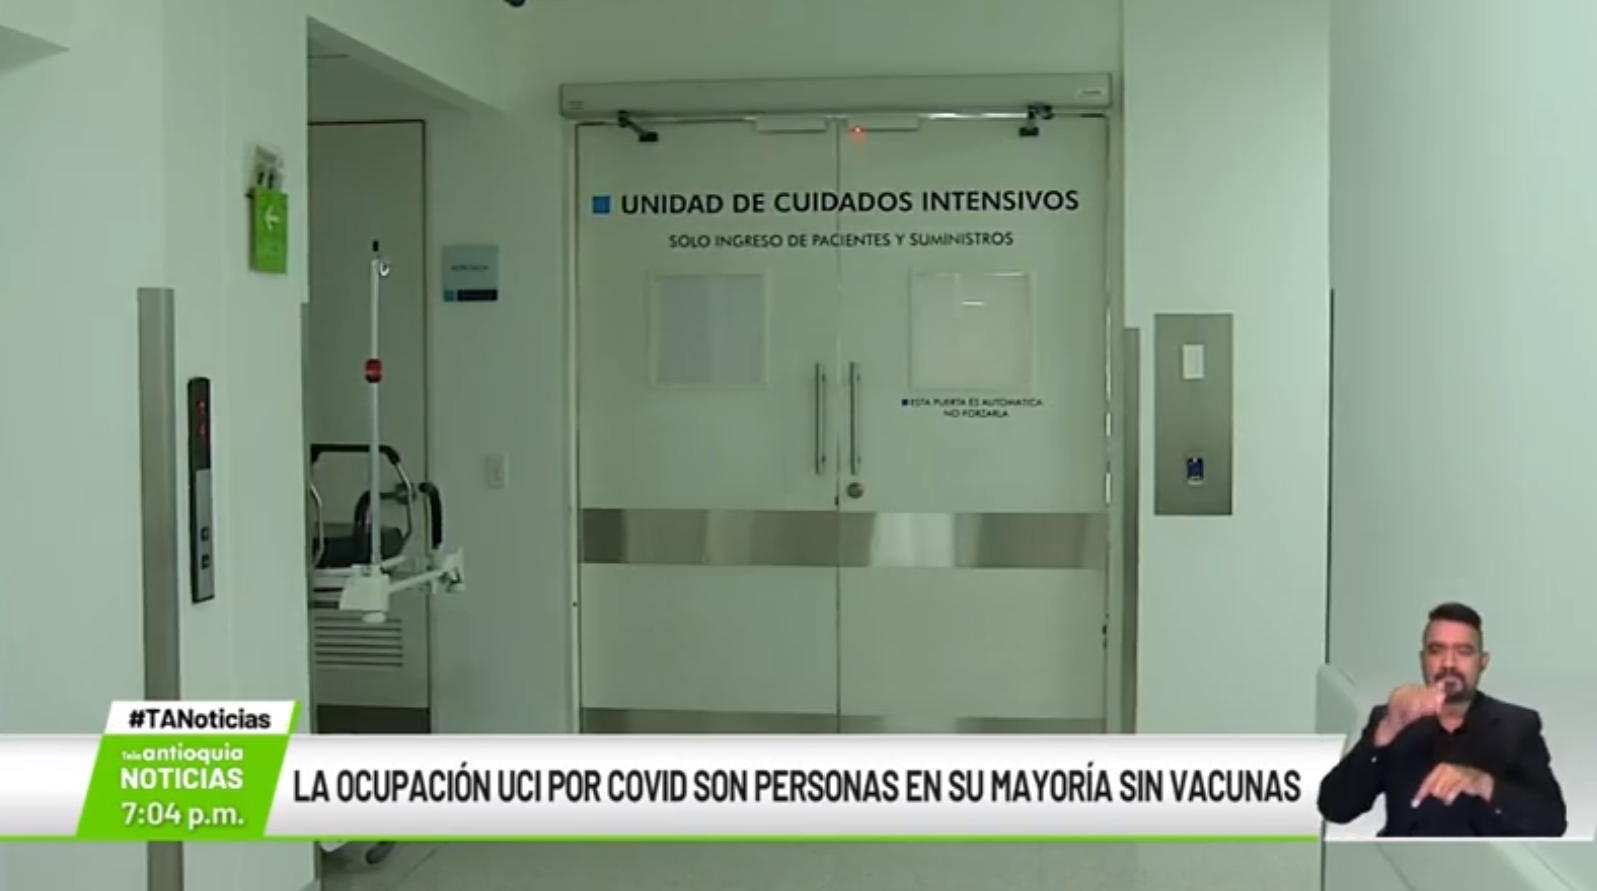 La ocupación UCI por Covid son personas en su mayoría sin vacunas